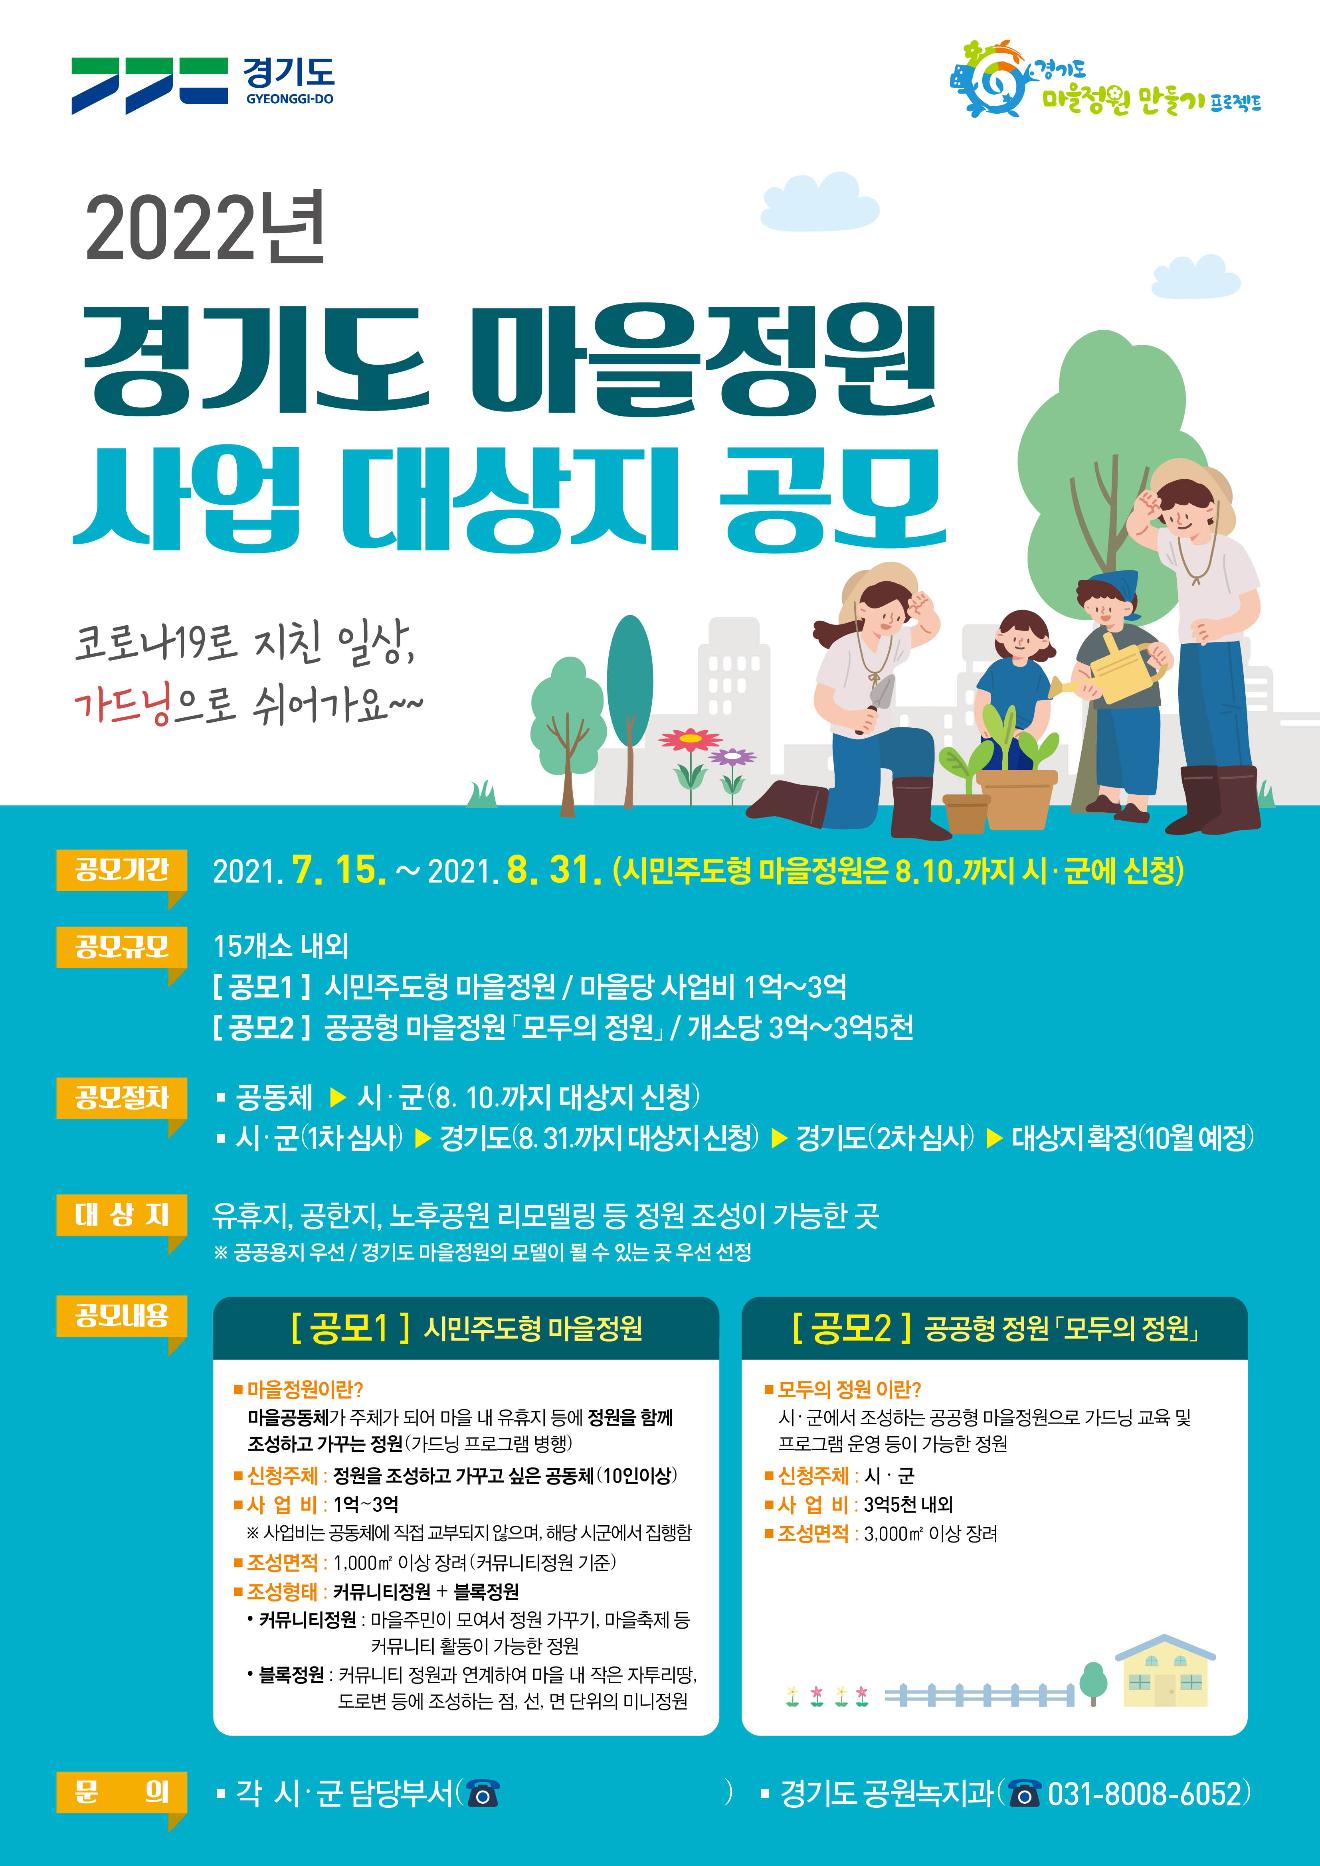 2022년 경기도 마을정원 조성사업 대상지 공모 포스터